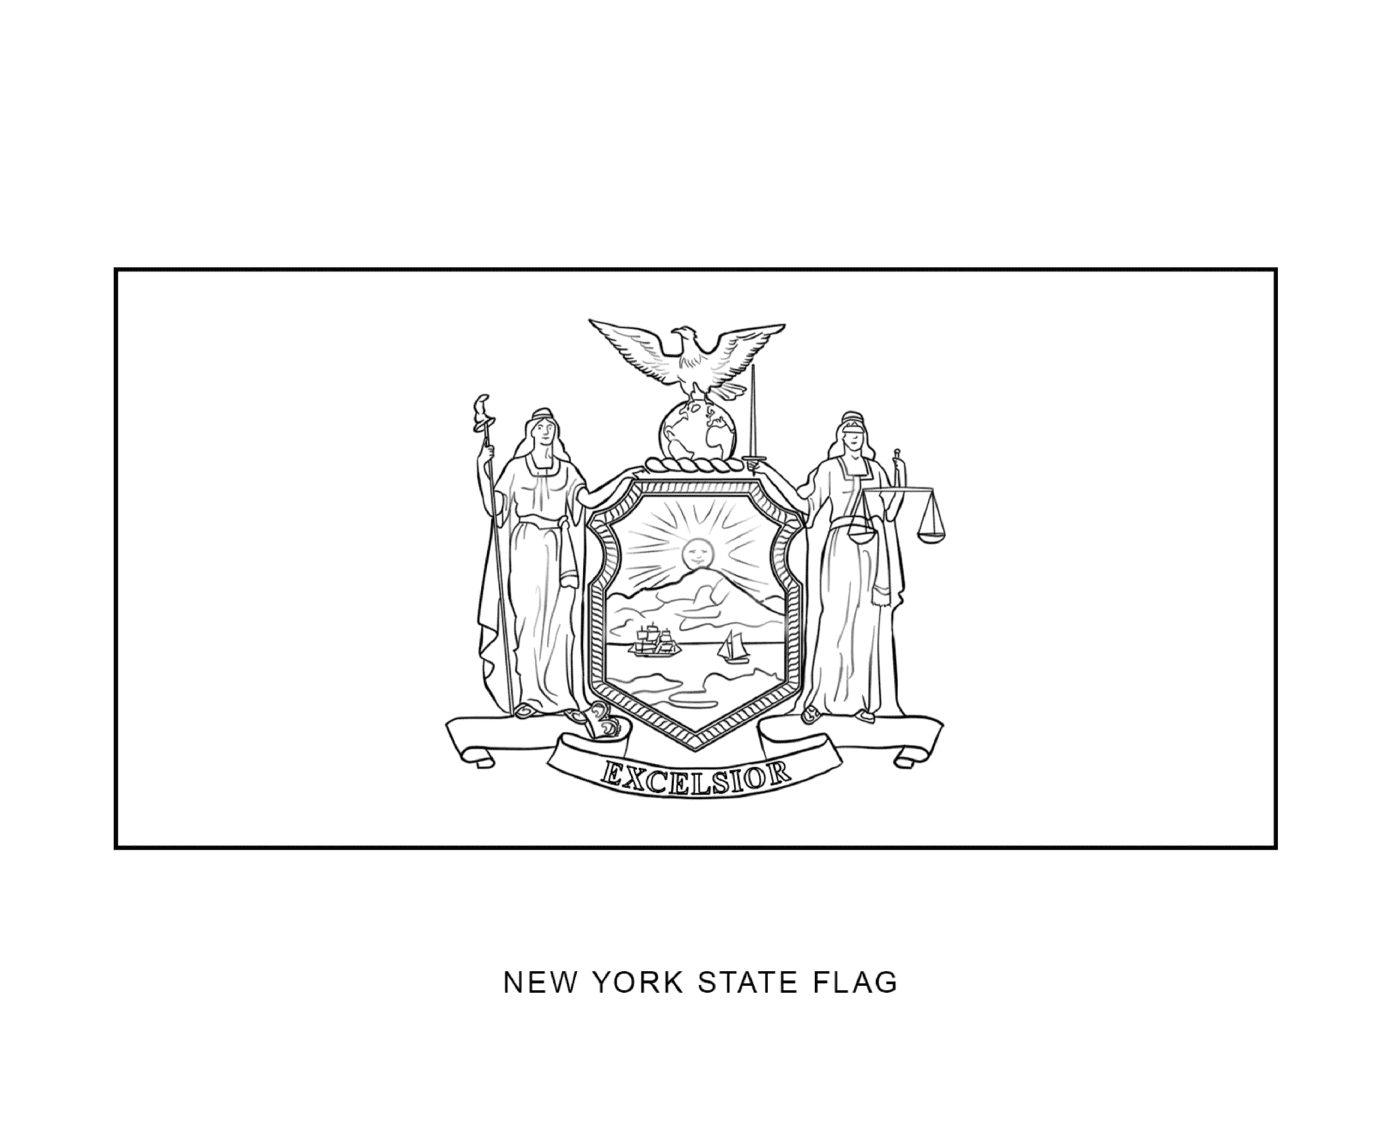  New York Staatsflagge in schwarzer Tinte gezeichnet 